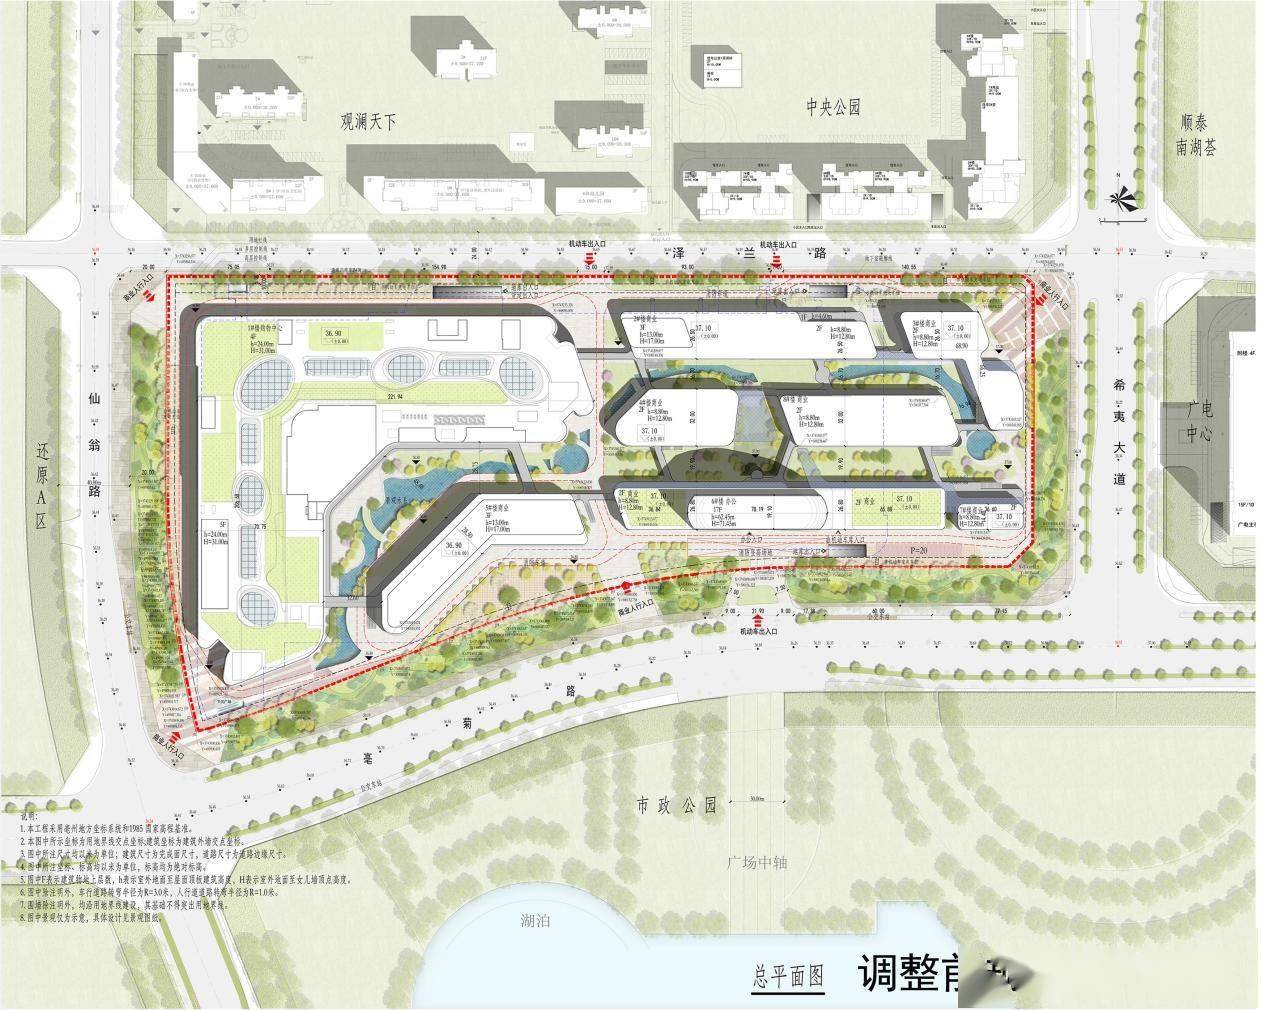 关于亳州市高新区宝龙商业项目规划设计方案 调整 及规划许可公